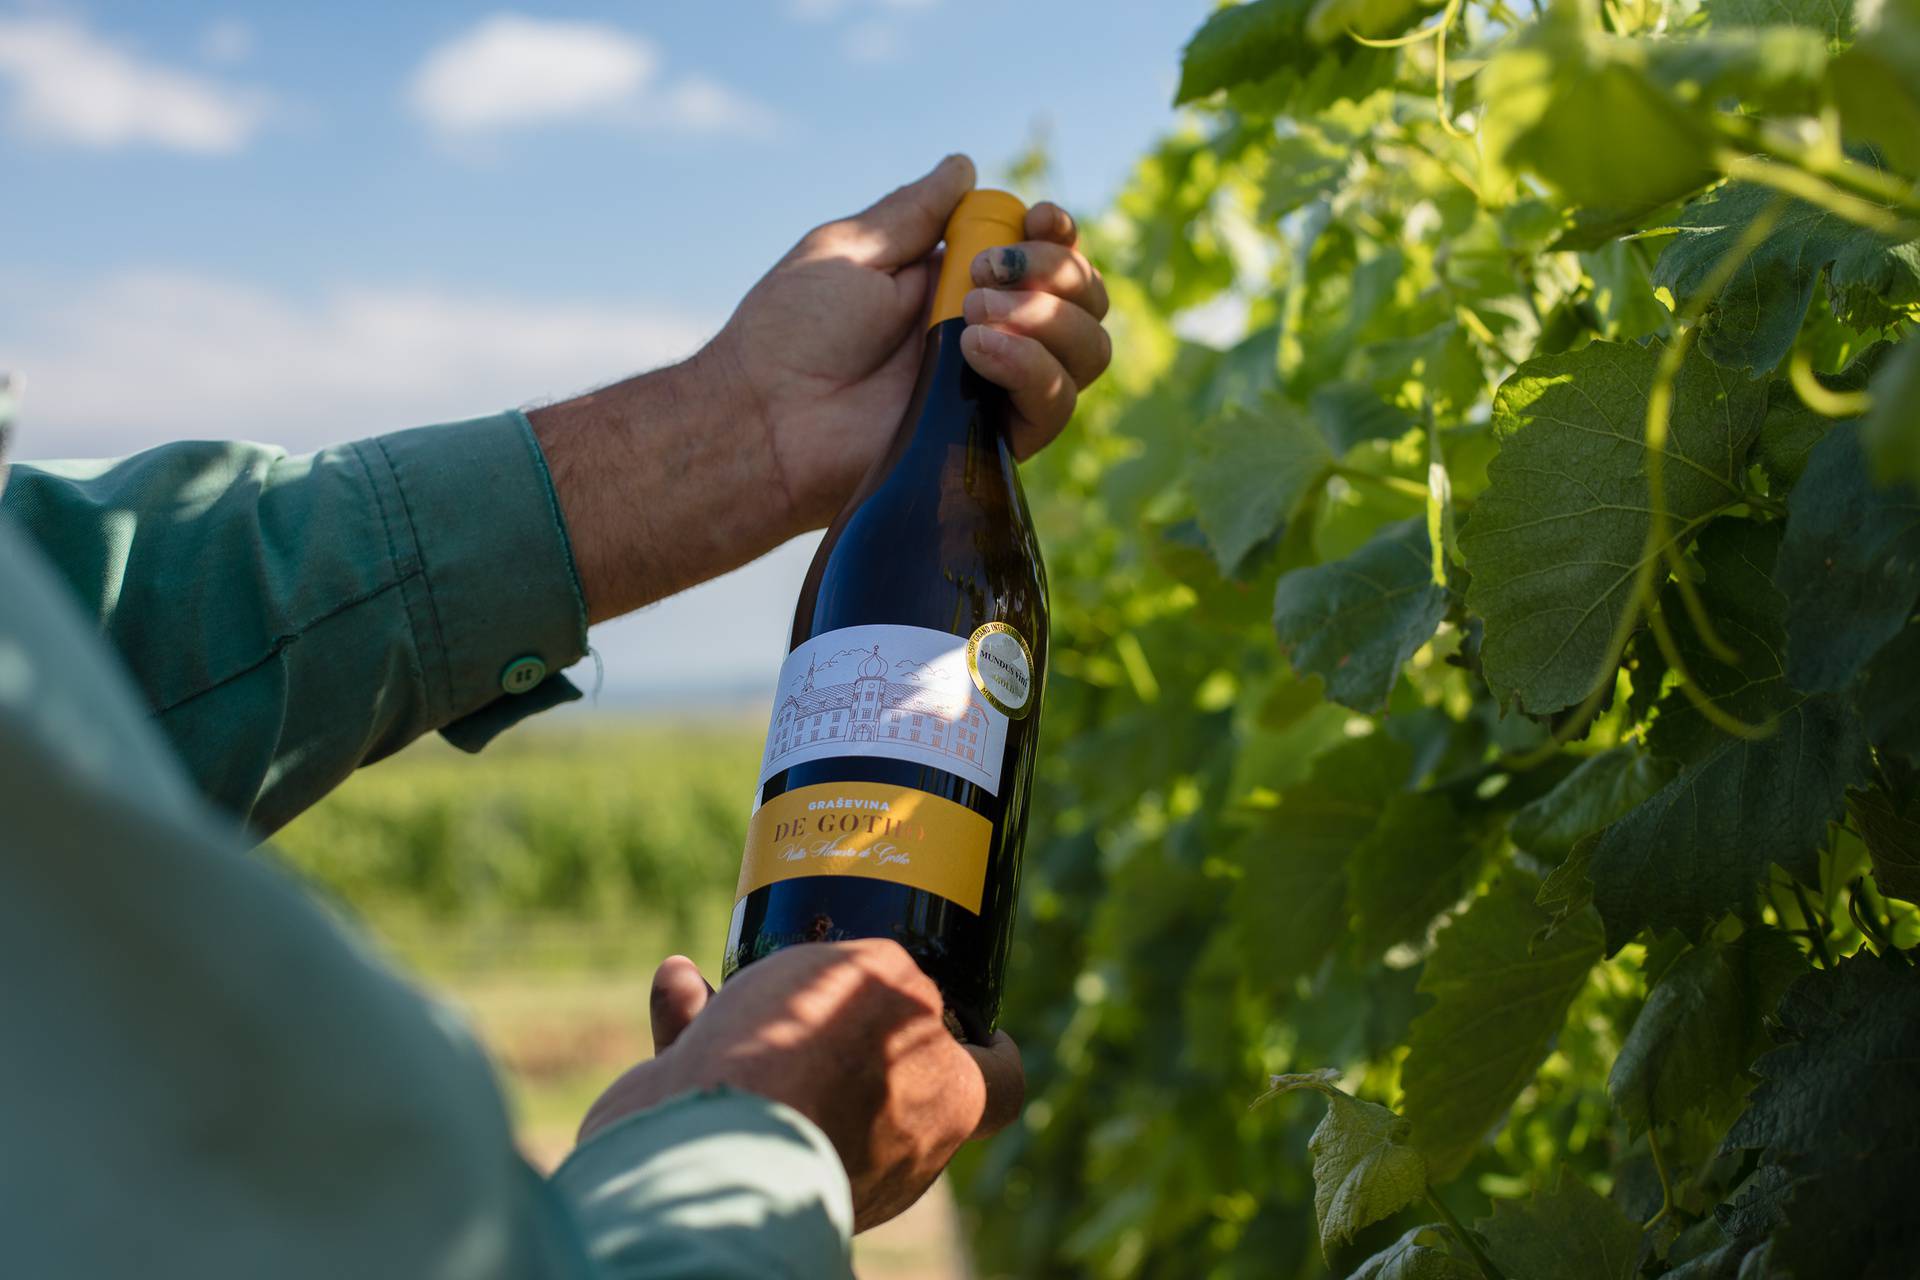 Vino koje morate probati jer je oduševilo vinske znalce – de Gotho graševina 2018.